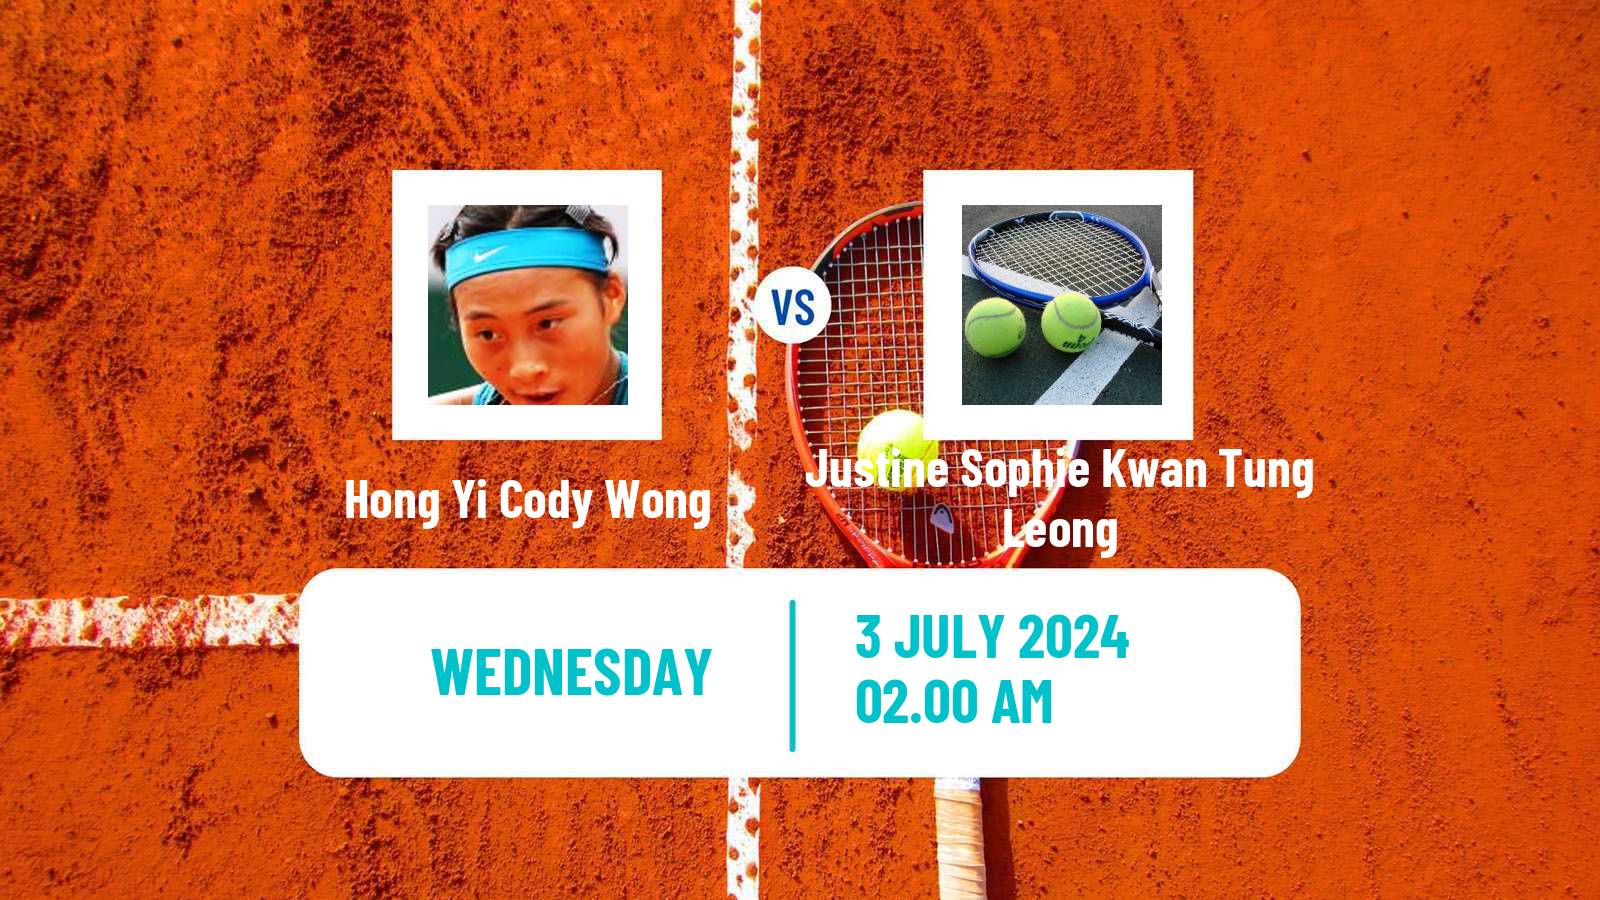 Tennis ITF W35 Hong Kong Women Hong Yi Cody Wong - Justine Sophie Kwan Tung Leong